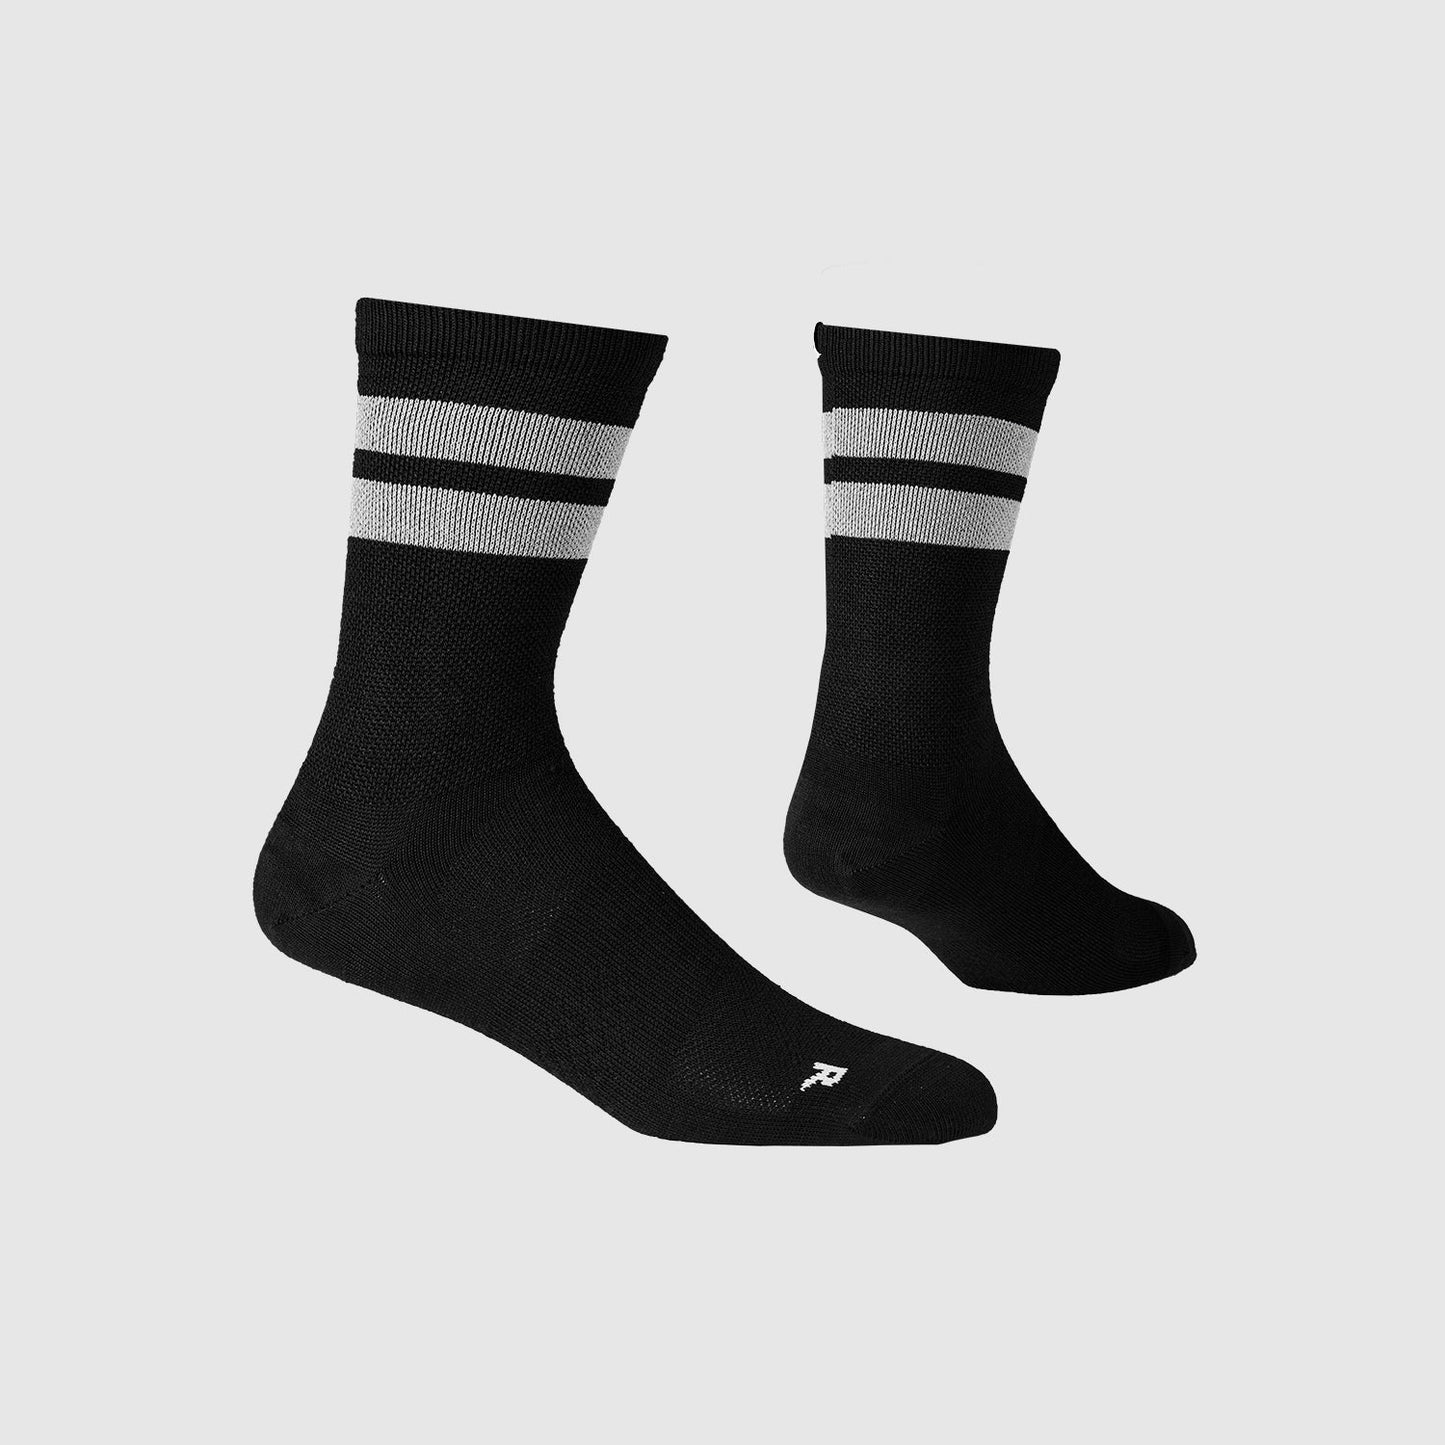 ランニングソックス IMRSO01 Merino Reflective Socks - Black [ユニセックス]